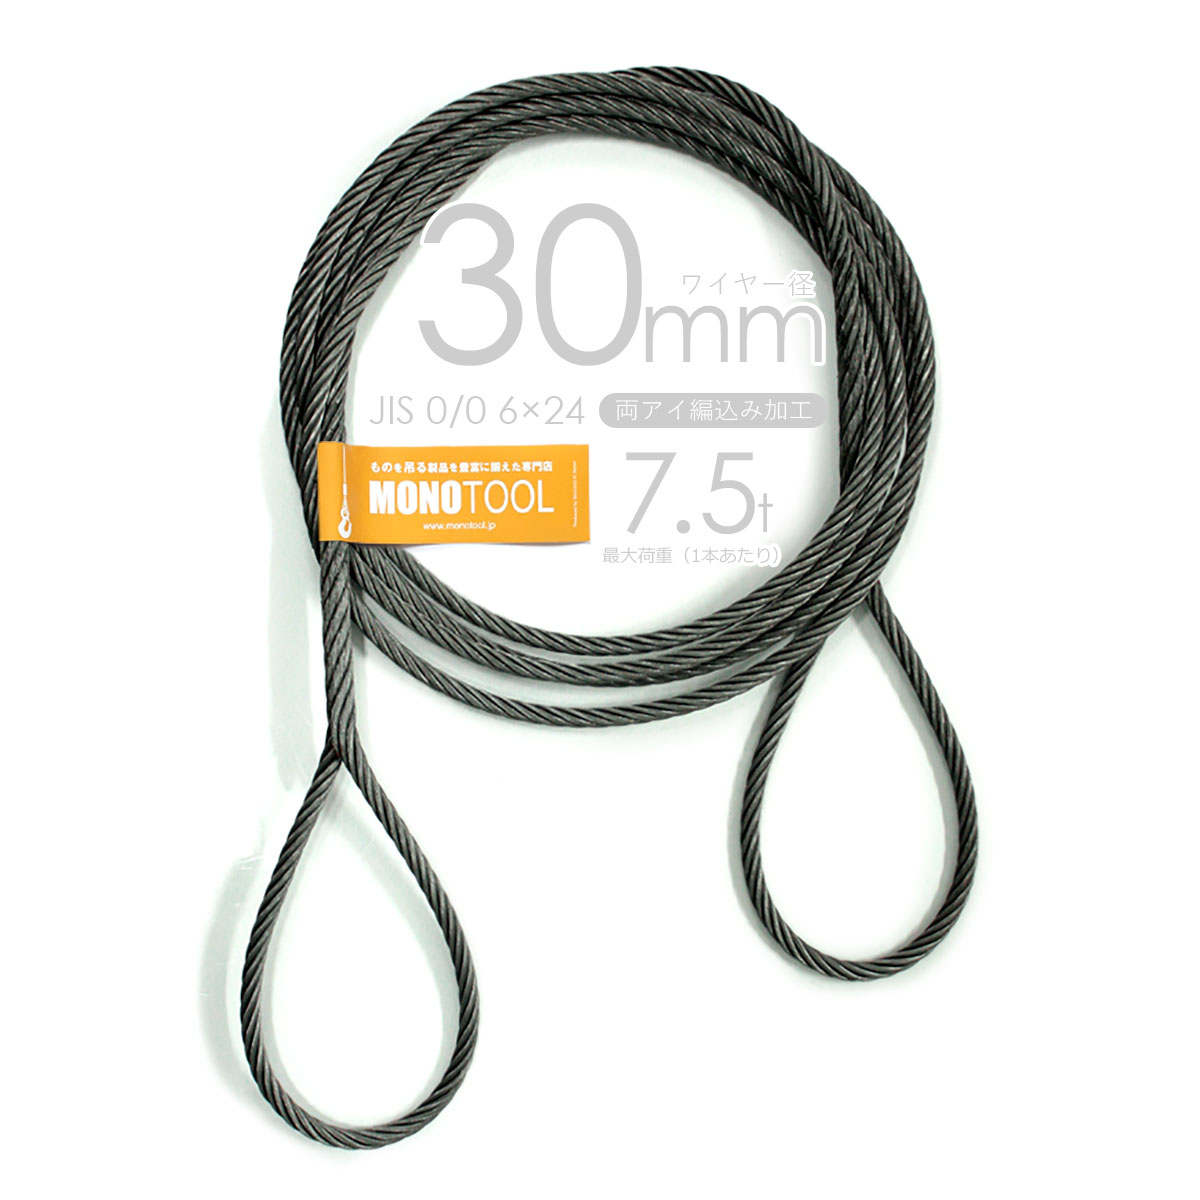 編み込み・フレミッシュ加工 JIS黒(O/O) 30mm(10分) 玉掛ワイヤロープ 